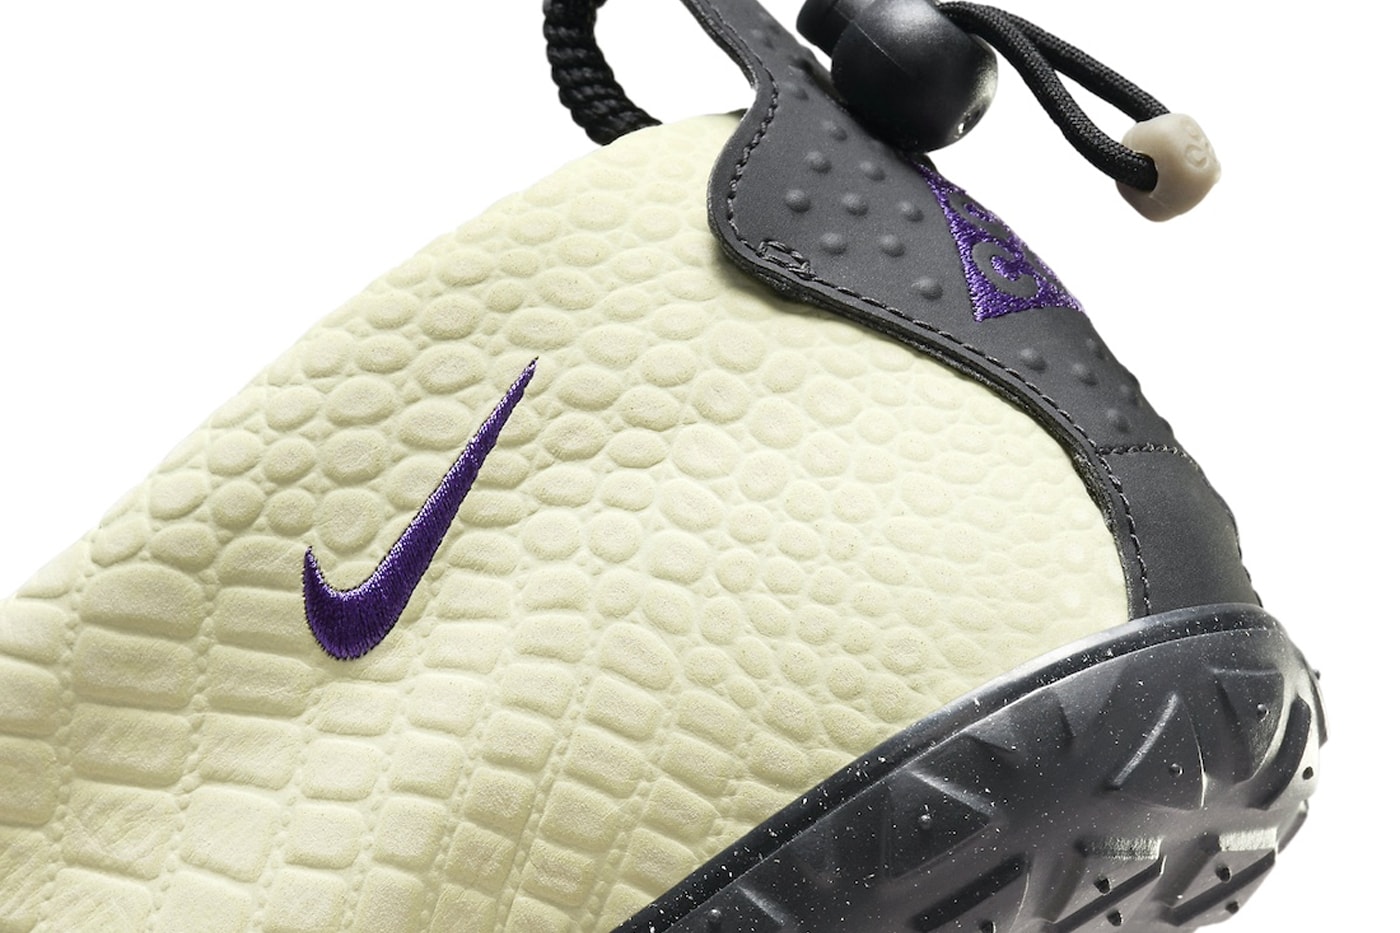 ナイキACGエアモックから春らしい柔らかな配色を纏った“オリーブオーラ”が登場 Nike ACG Moc Premium Olive Aura FV4571-300 Release Info